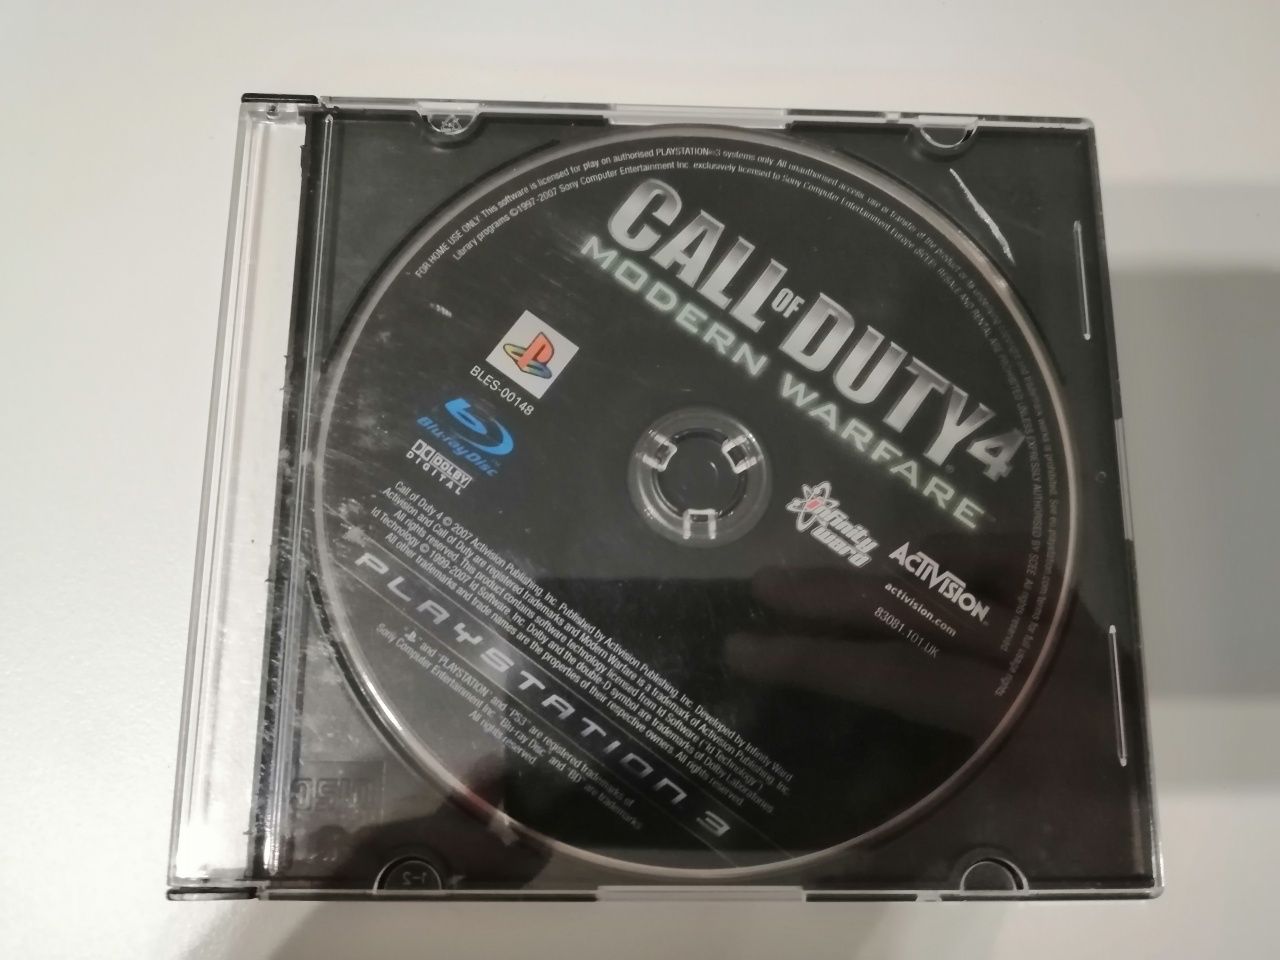 Call of Duty 4 Modern Warfare PlayStation 3